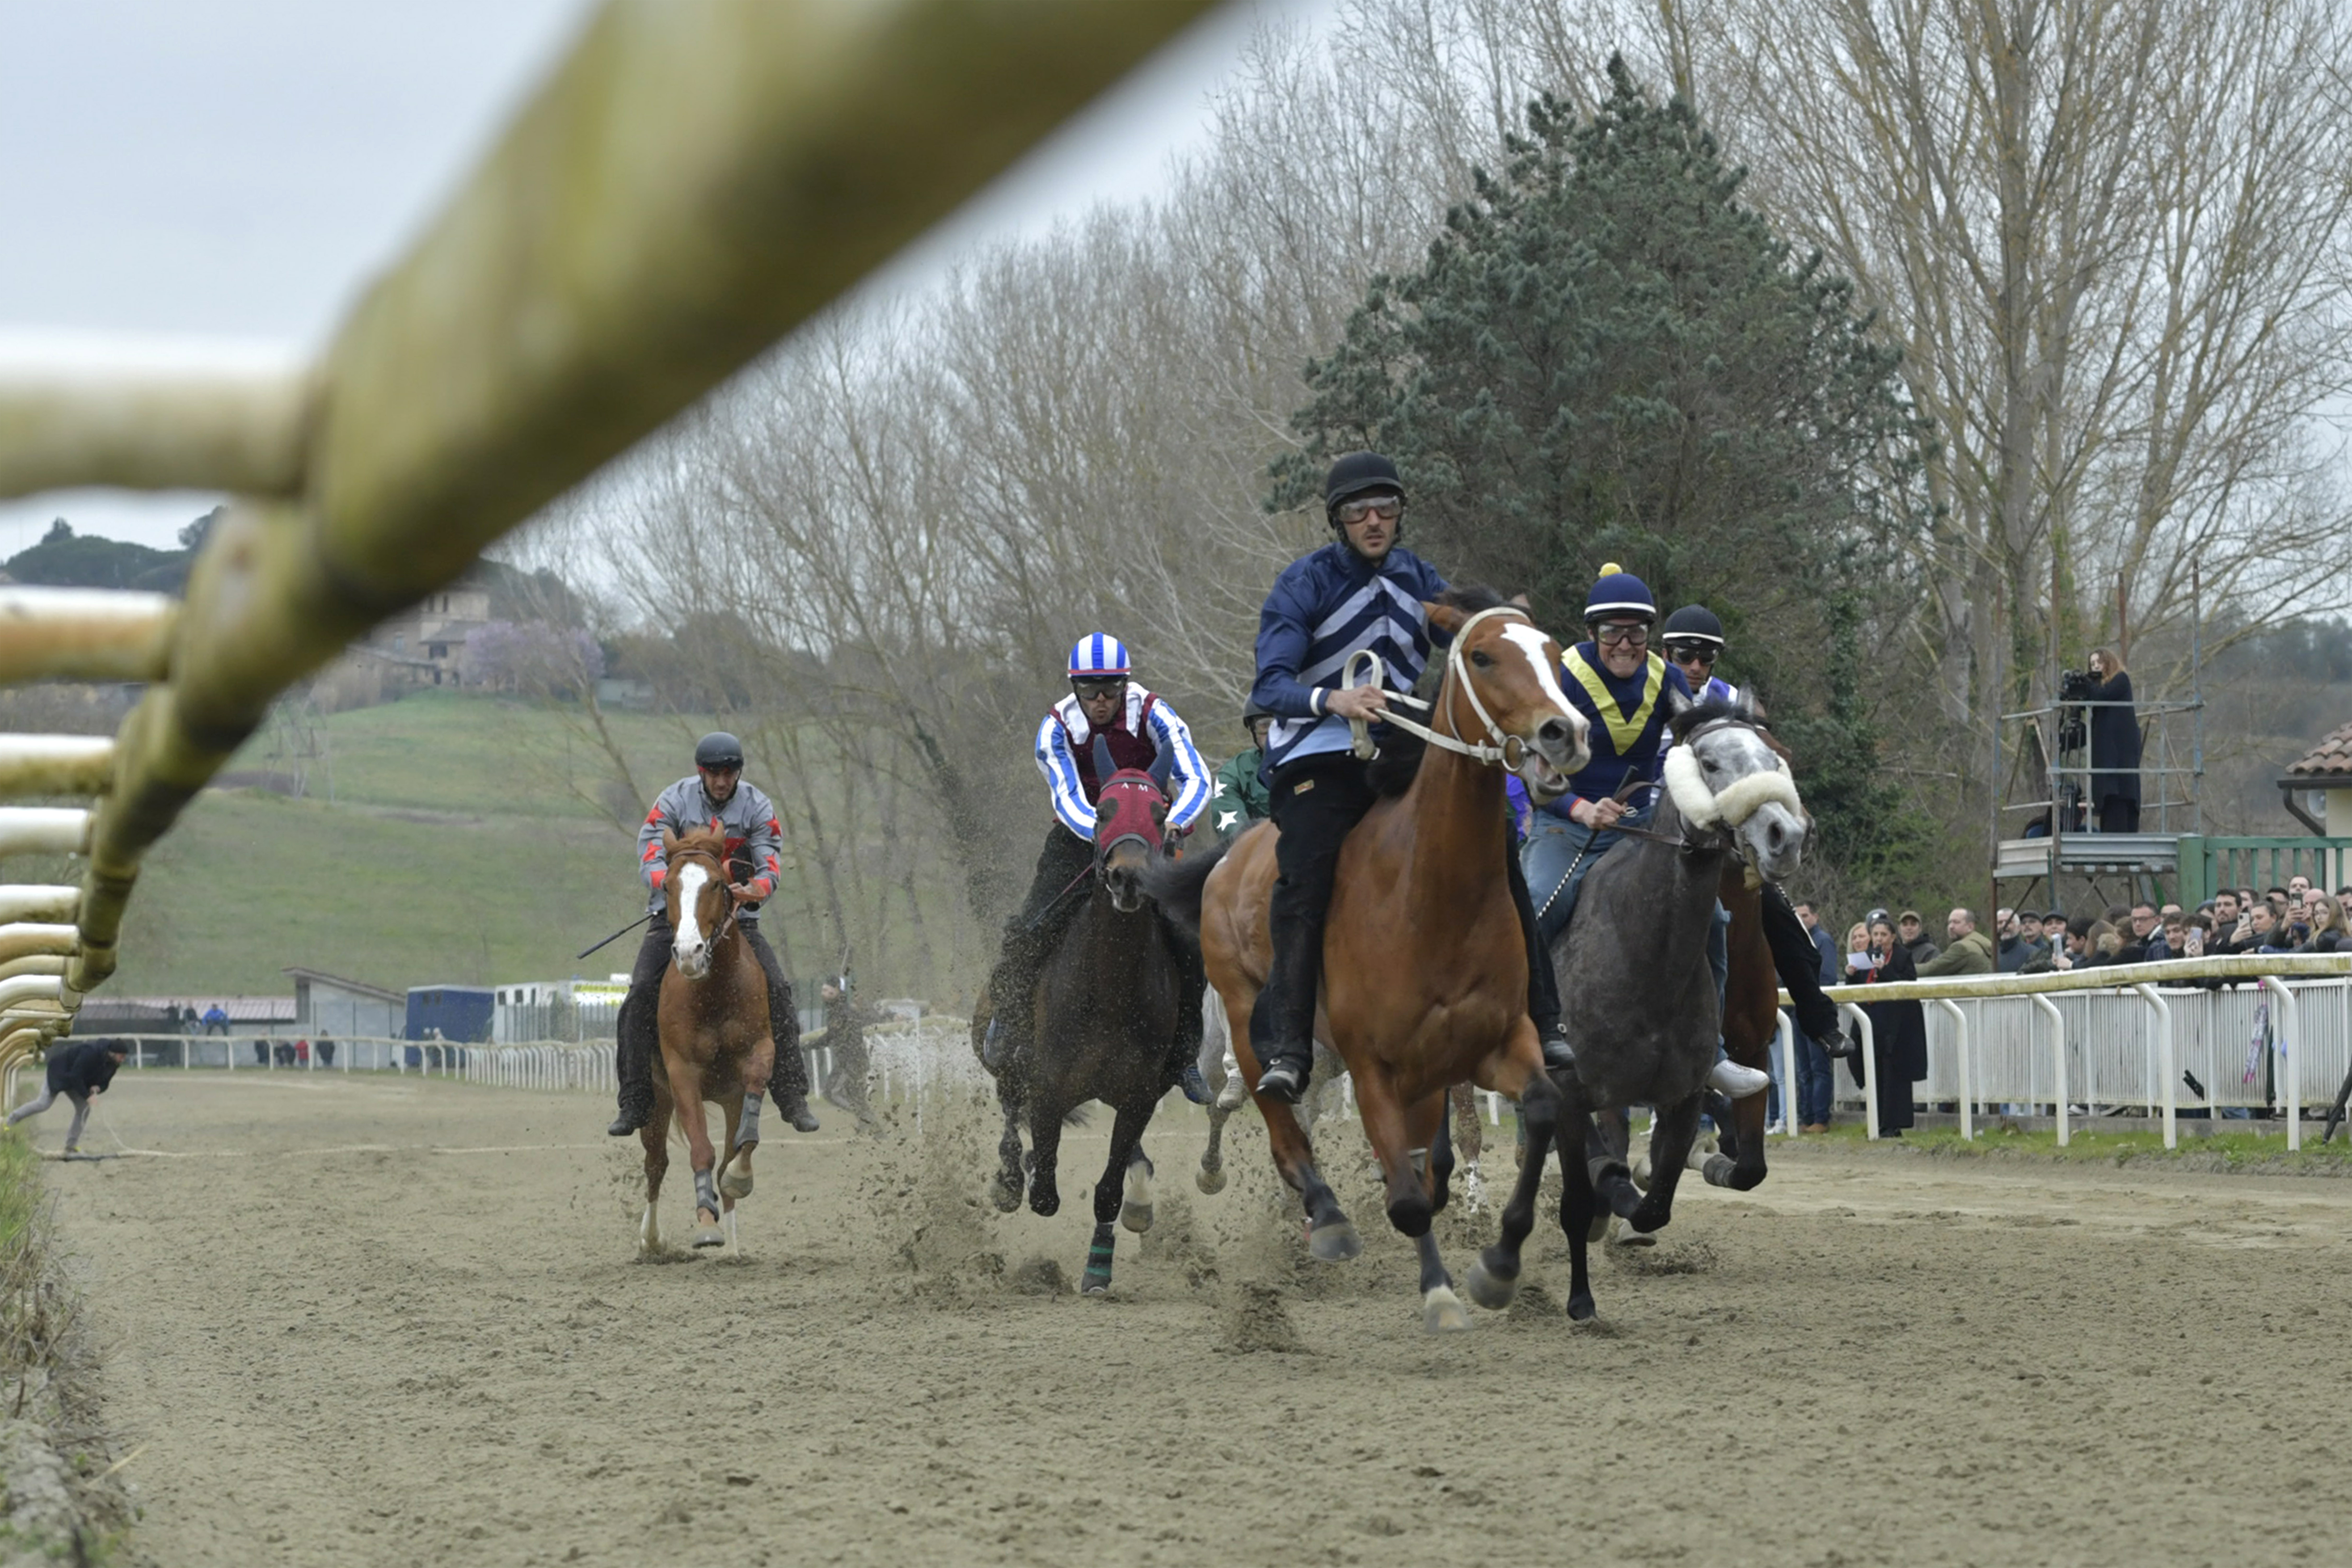 Il mondo dei cavalli e l'Università per Stranieri si uniscono in occasione delle corse a Pian delle Fornaci